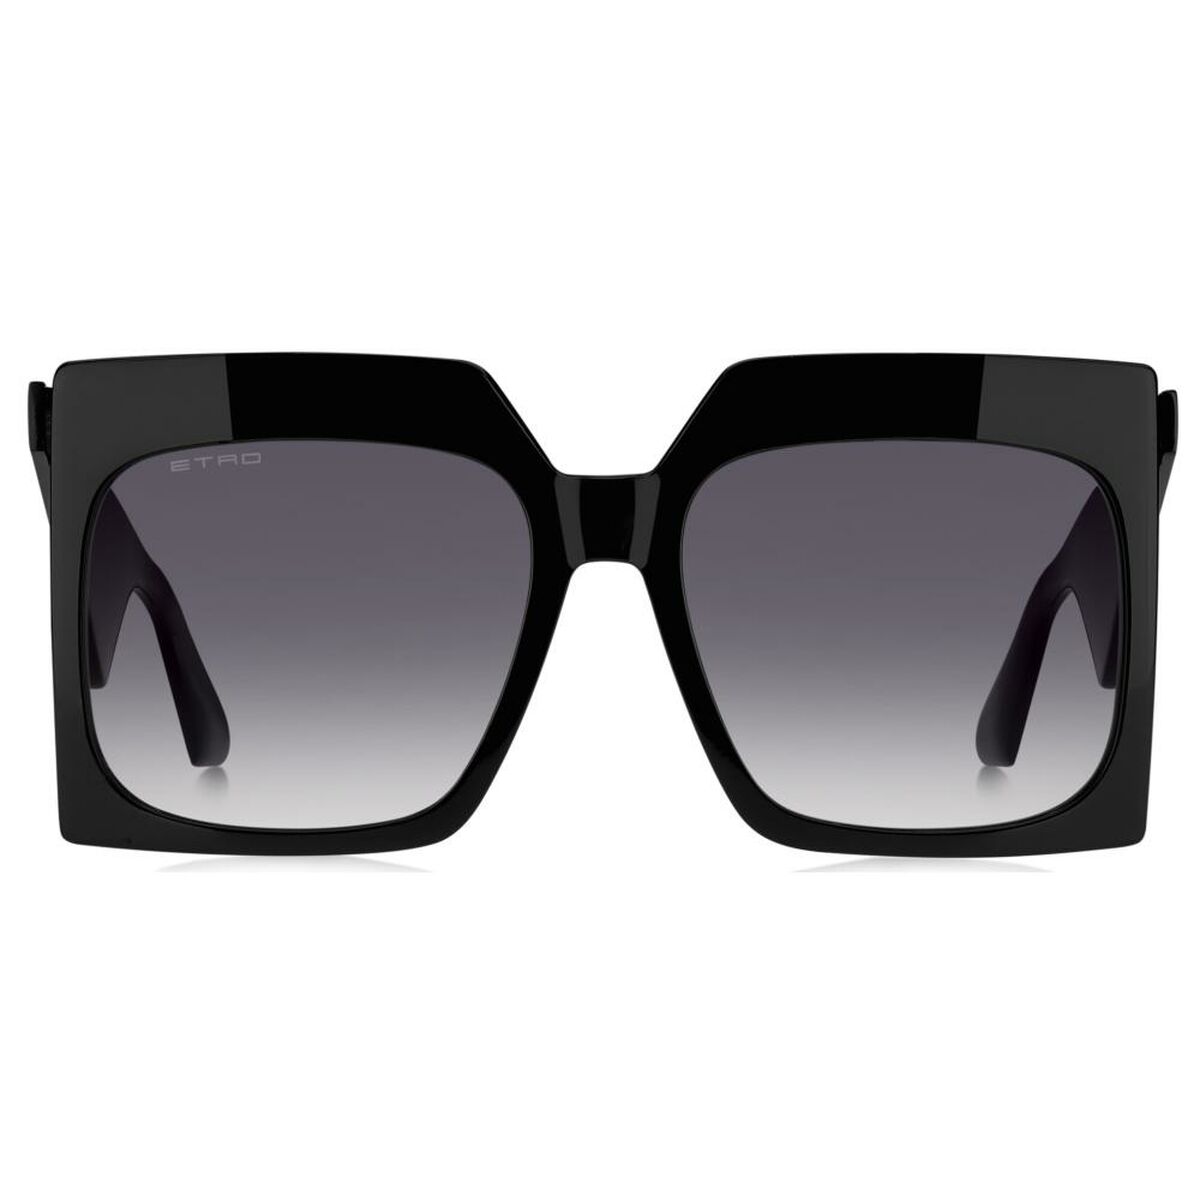 Kaufe Damensonnenbrille Etro ETRO 0002_S bei AWK Flagship um € 233.00